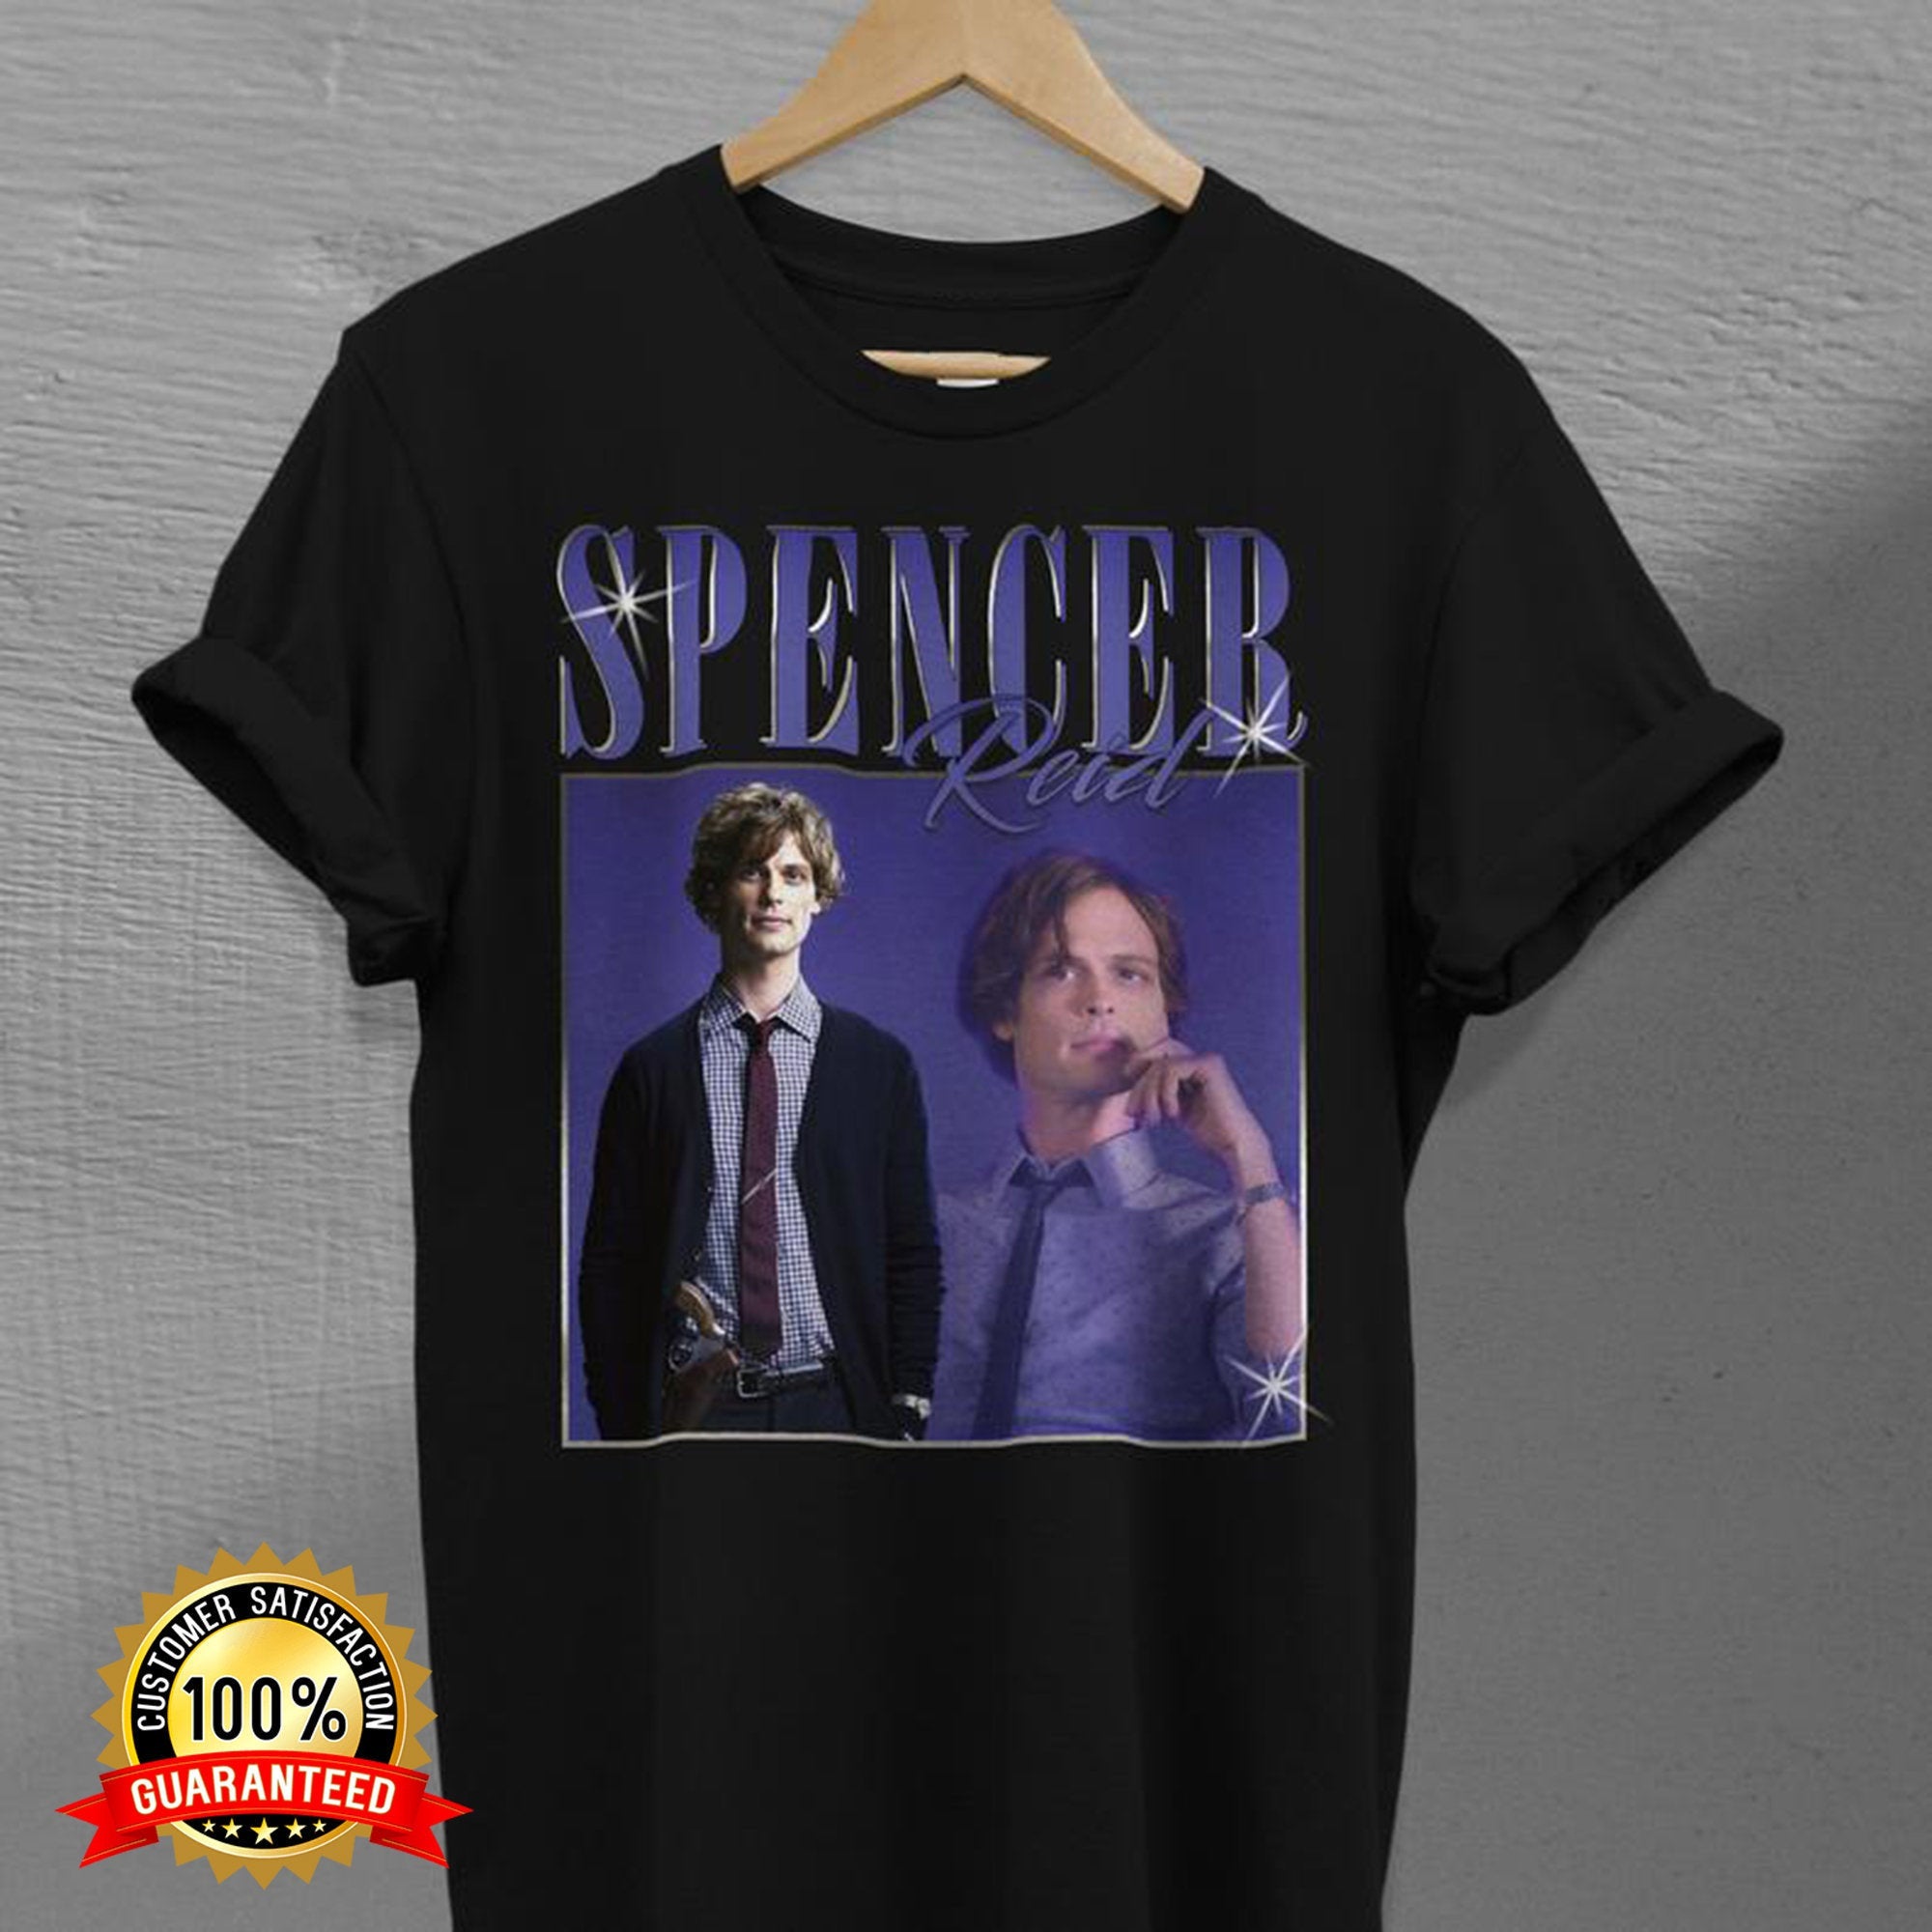 Vintage Spencer Reid. Criminal Minds TV Series. Homage T-shirt